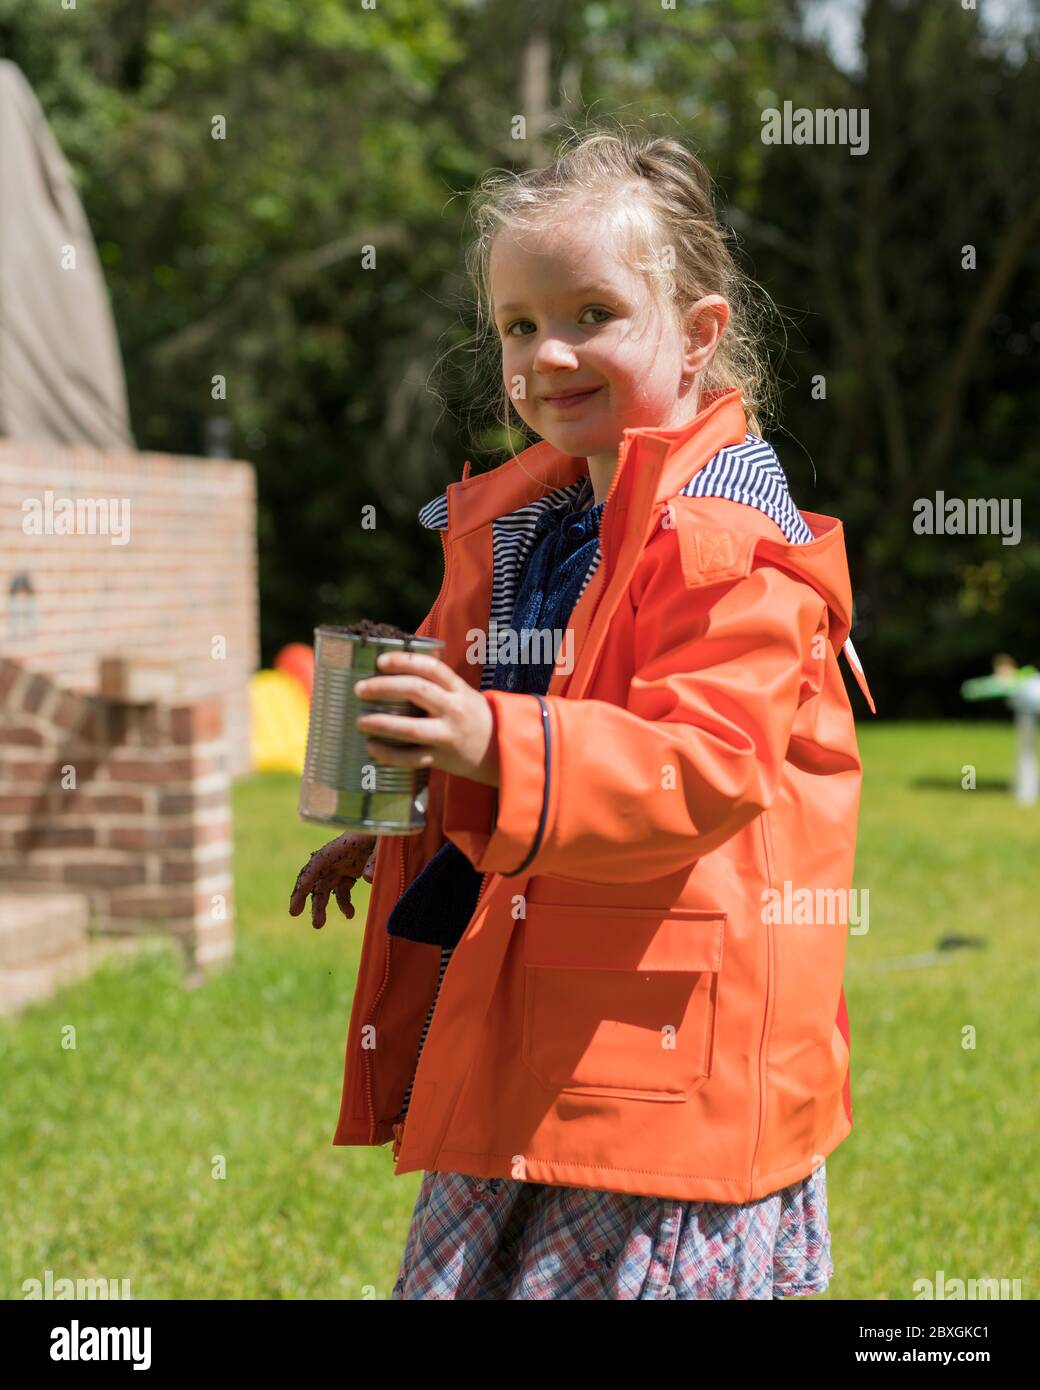 fille de 4 ans planter et jardiner, planter des plantes de concombre, porter un manteau de pluie orange/violet, jour ensoleillé, aide pré-école dans le jardin Banque D'Images